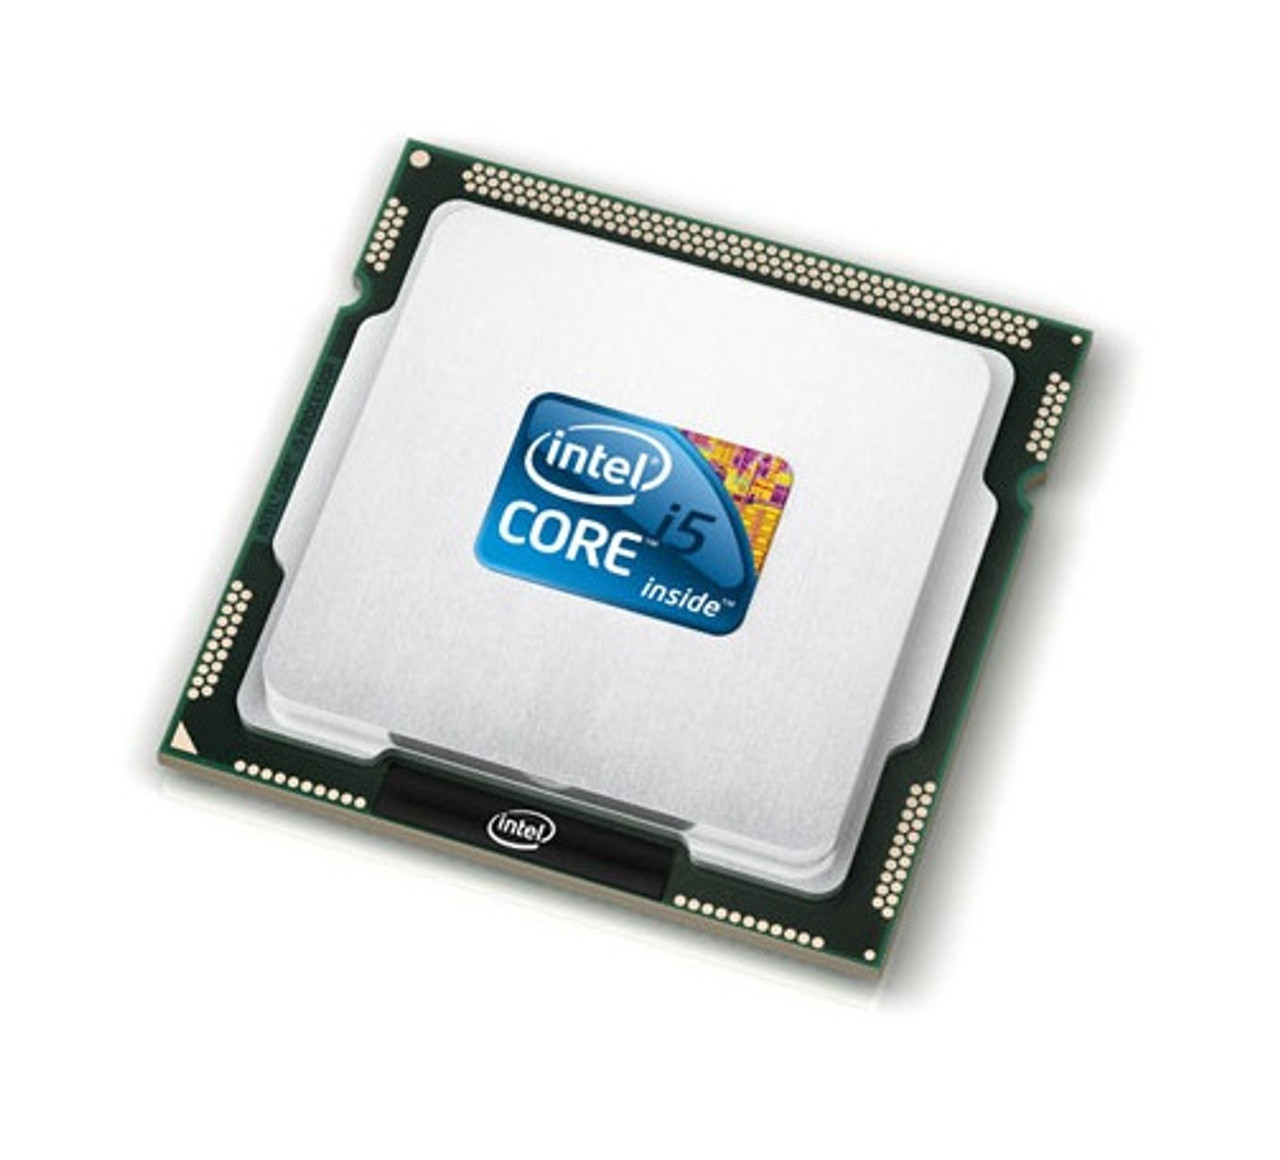 SR16S - Intel Core i5-4360U Dual Core 1.50GHz 5.00GT/s DMI2 3MB L3 Cache Socket FCBGA1168 Mobile Processor